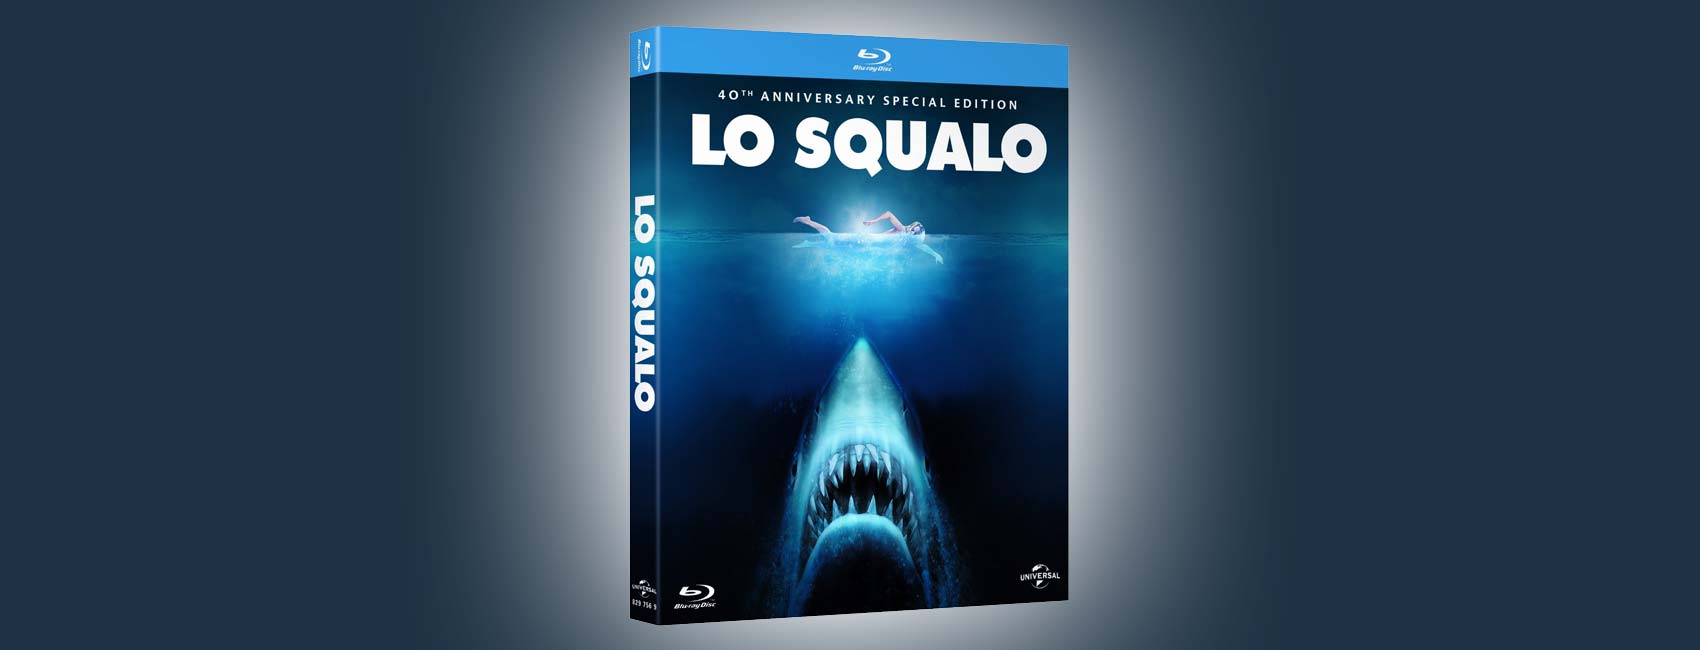 Lo squalo, Blu-ray Edizione 40esimo Anniversario